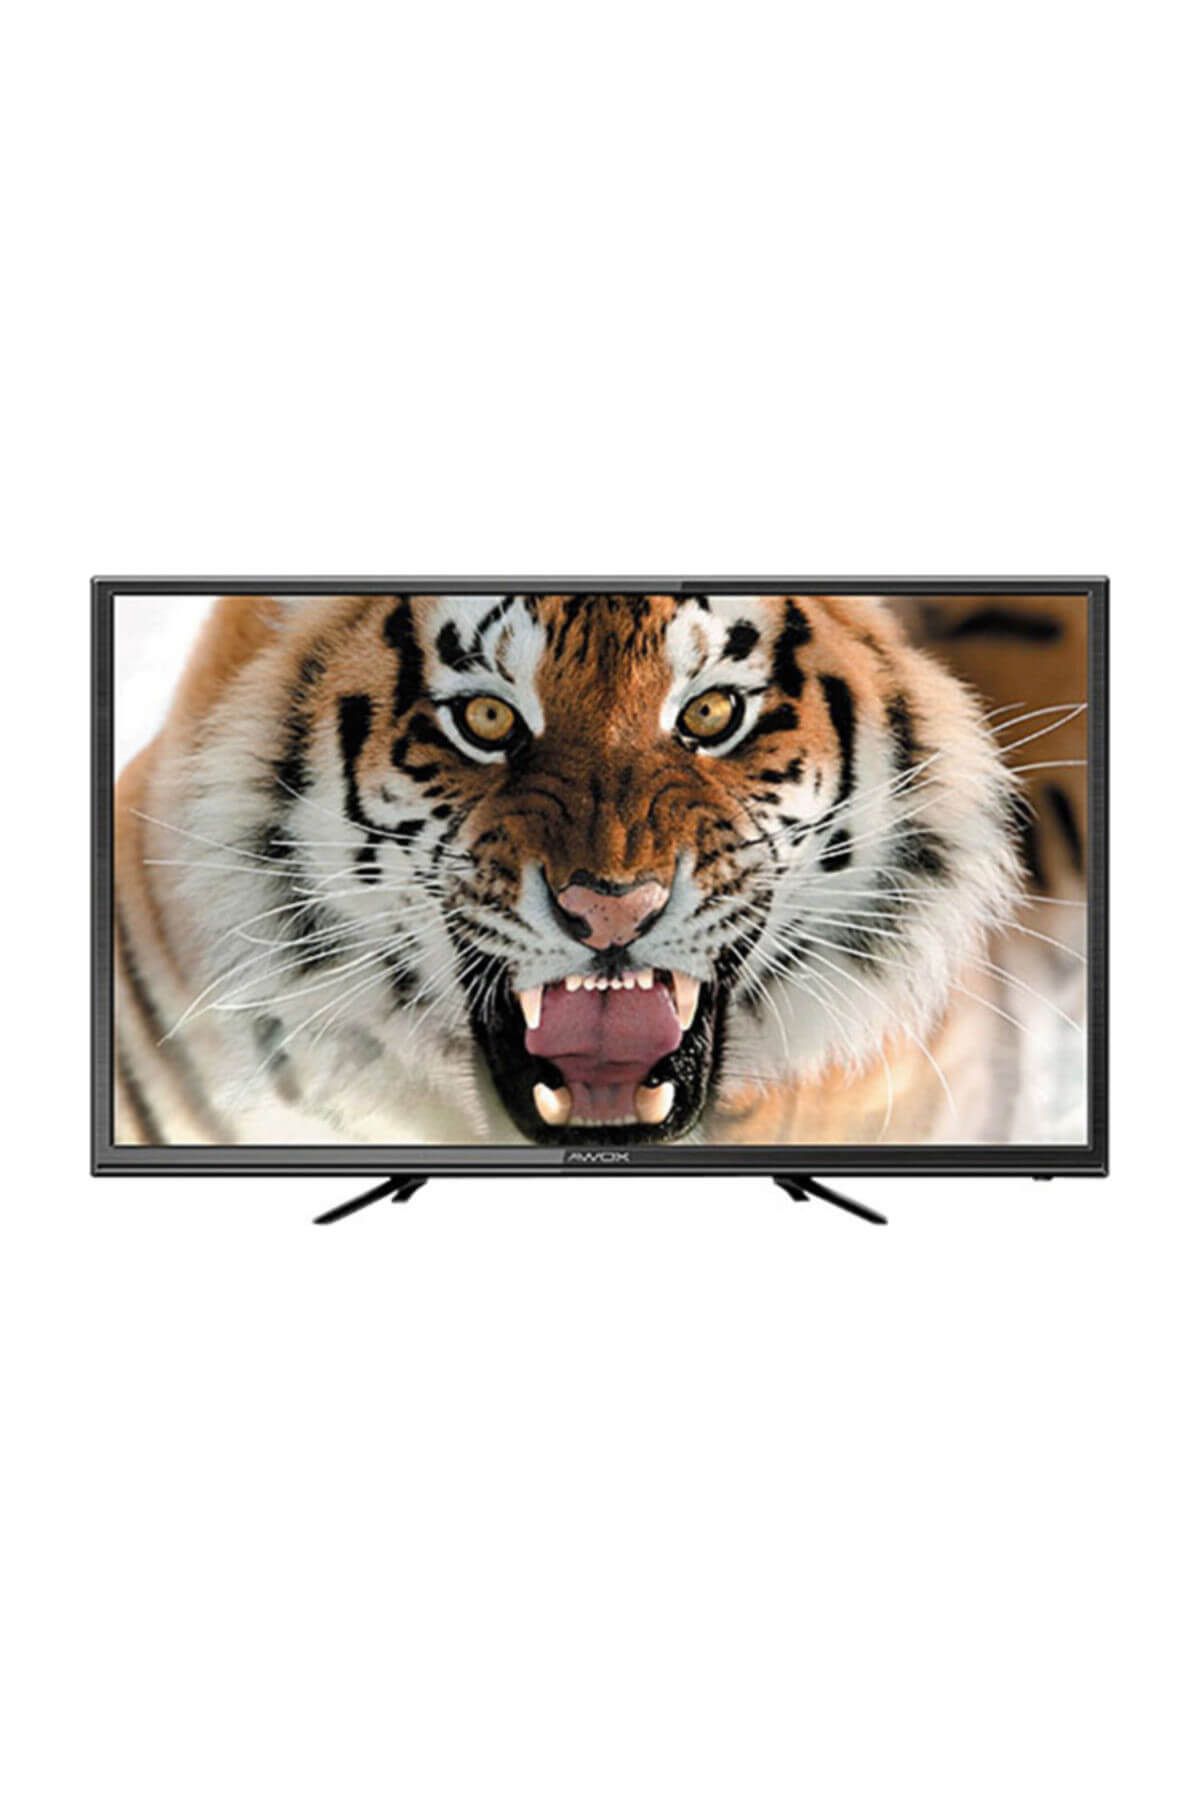 AWOX U40000STR 40" 101 Ekran Uydu Alıcılı Full HD LED TV